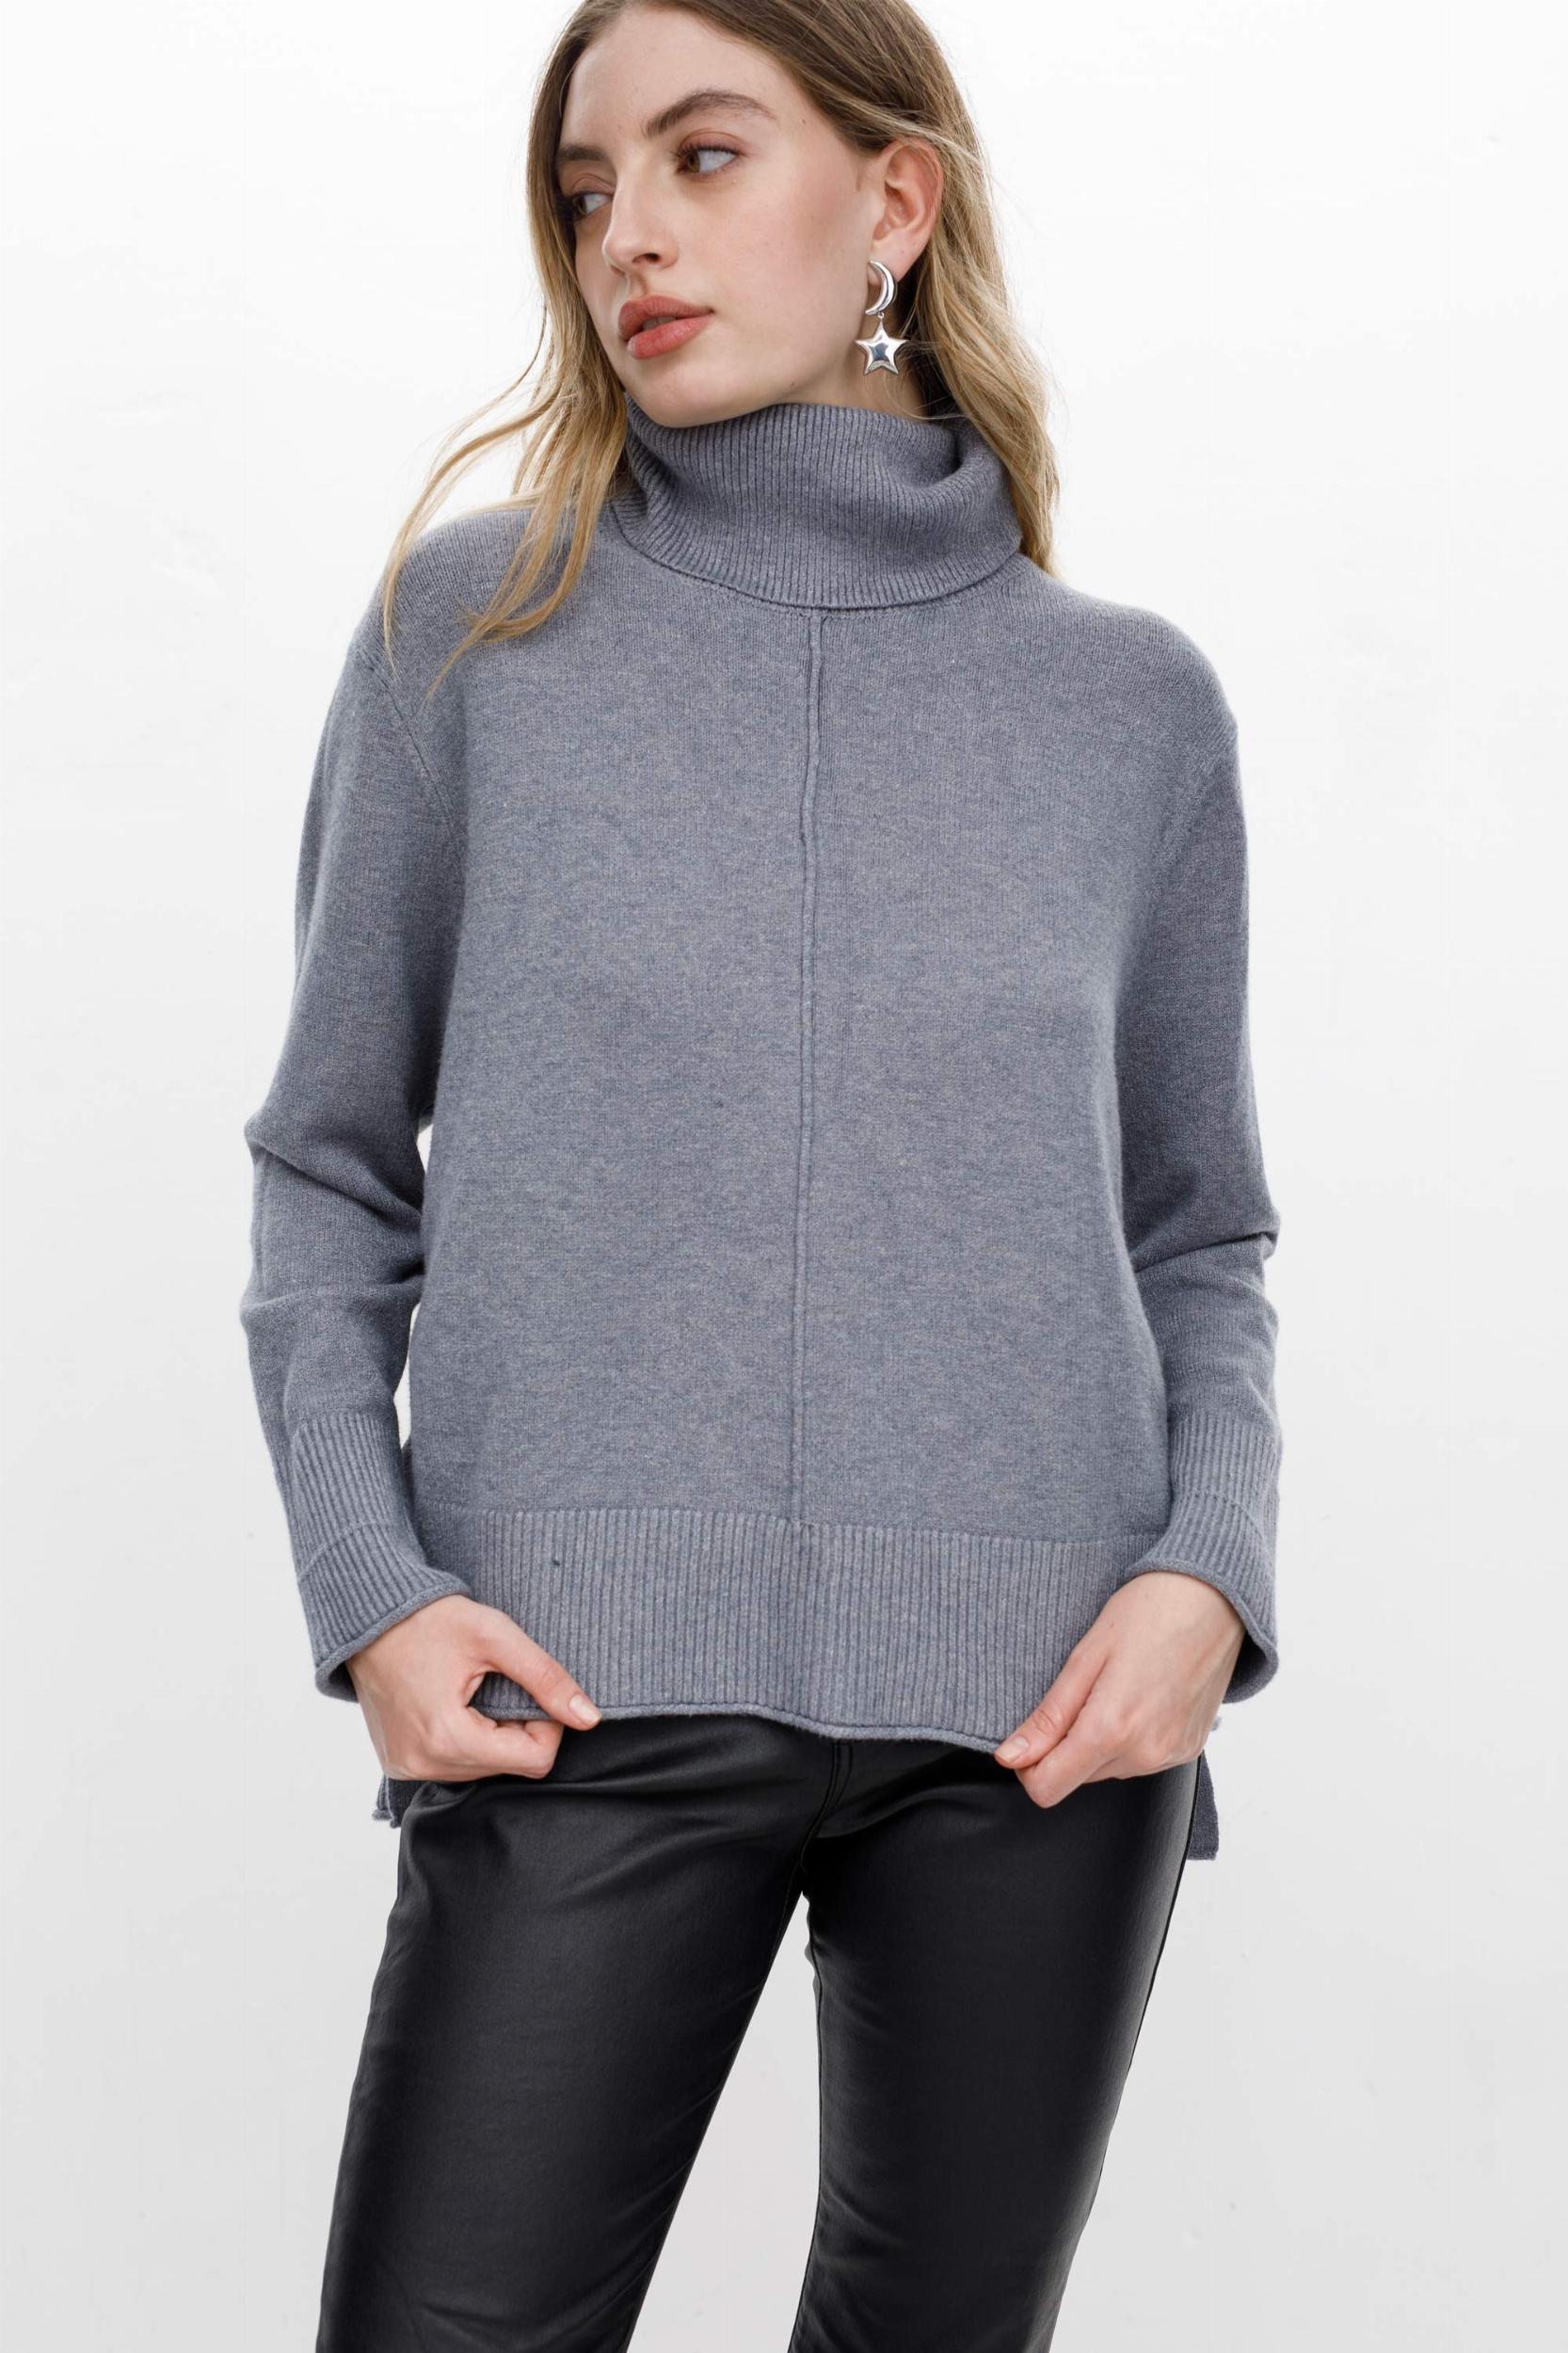 Sweater Polera Serrana gris talle unico